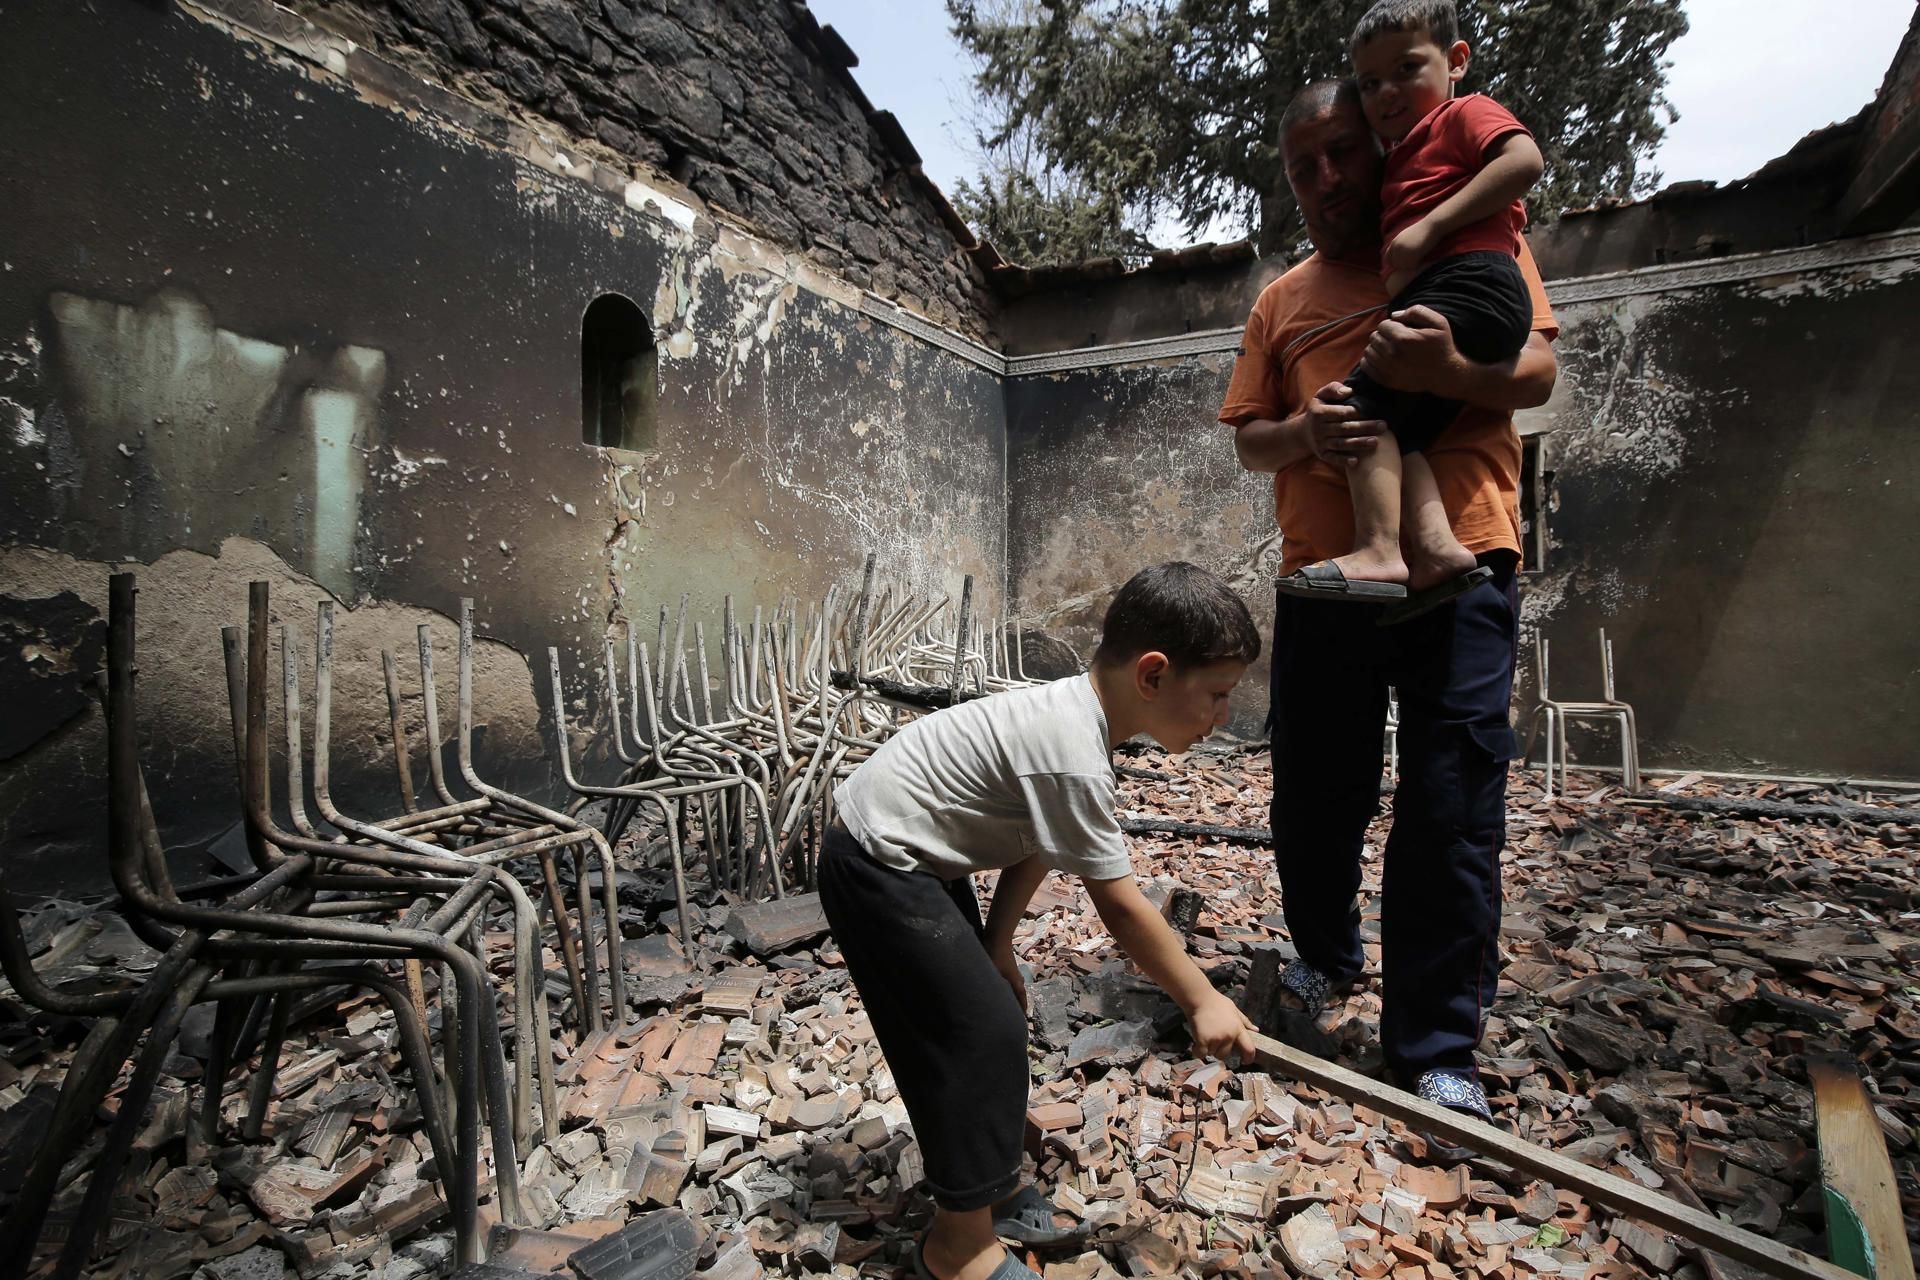 Un argelino con sus hijos inspecciona su casa quemada en el pueblo de Oeud Das, al este de Argel.